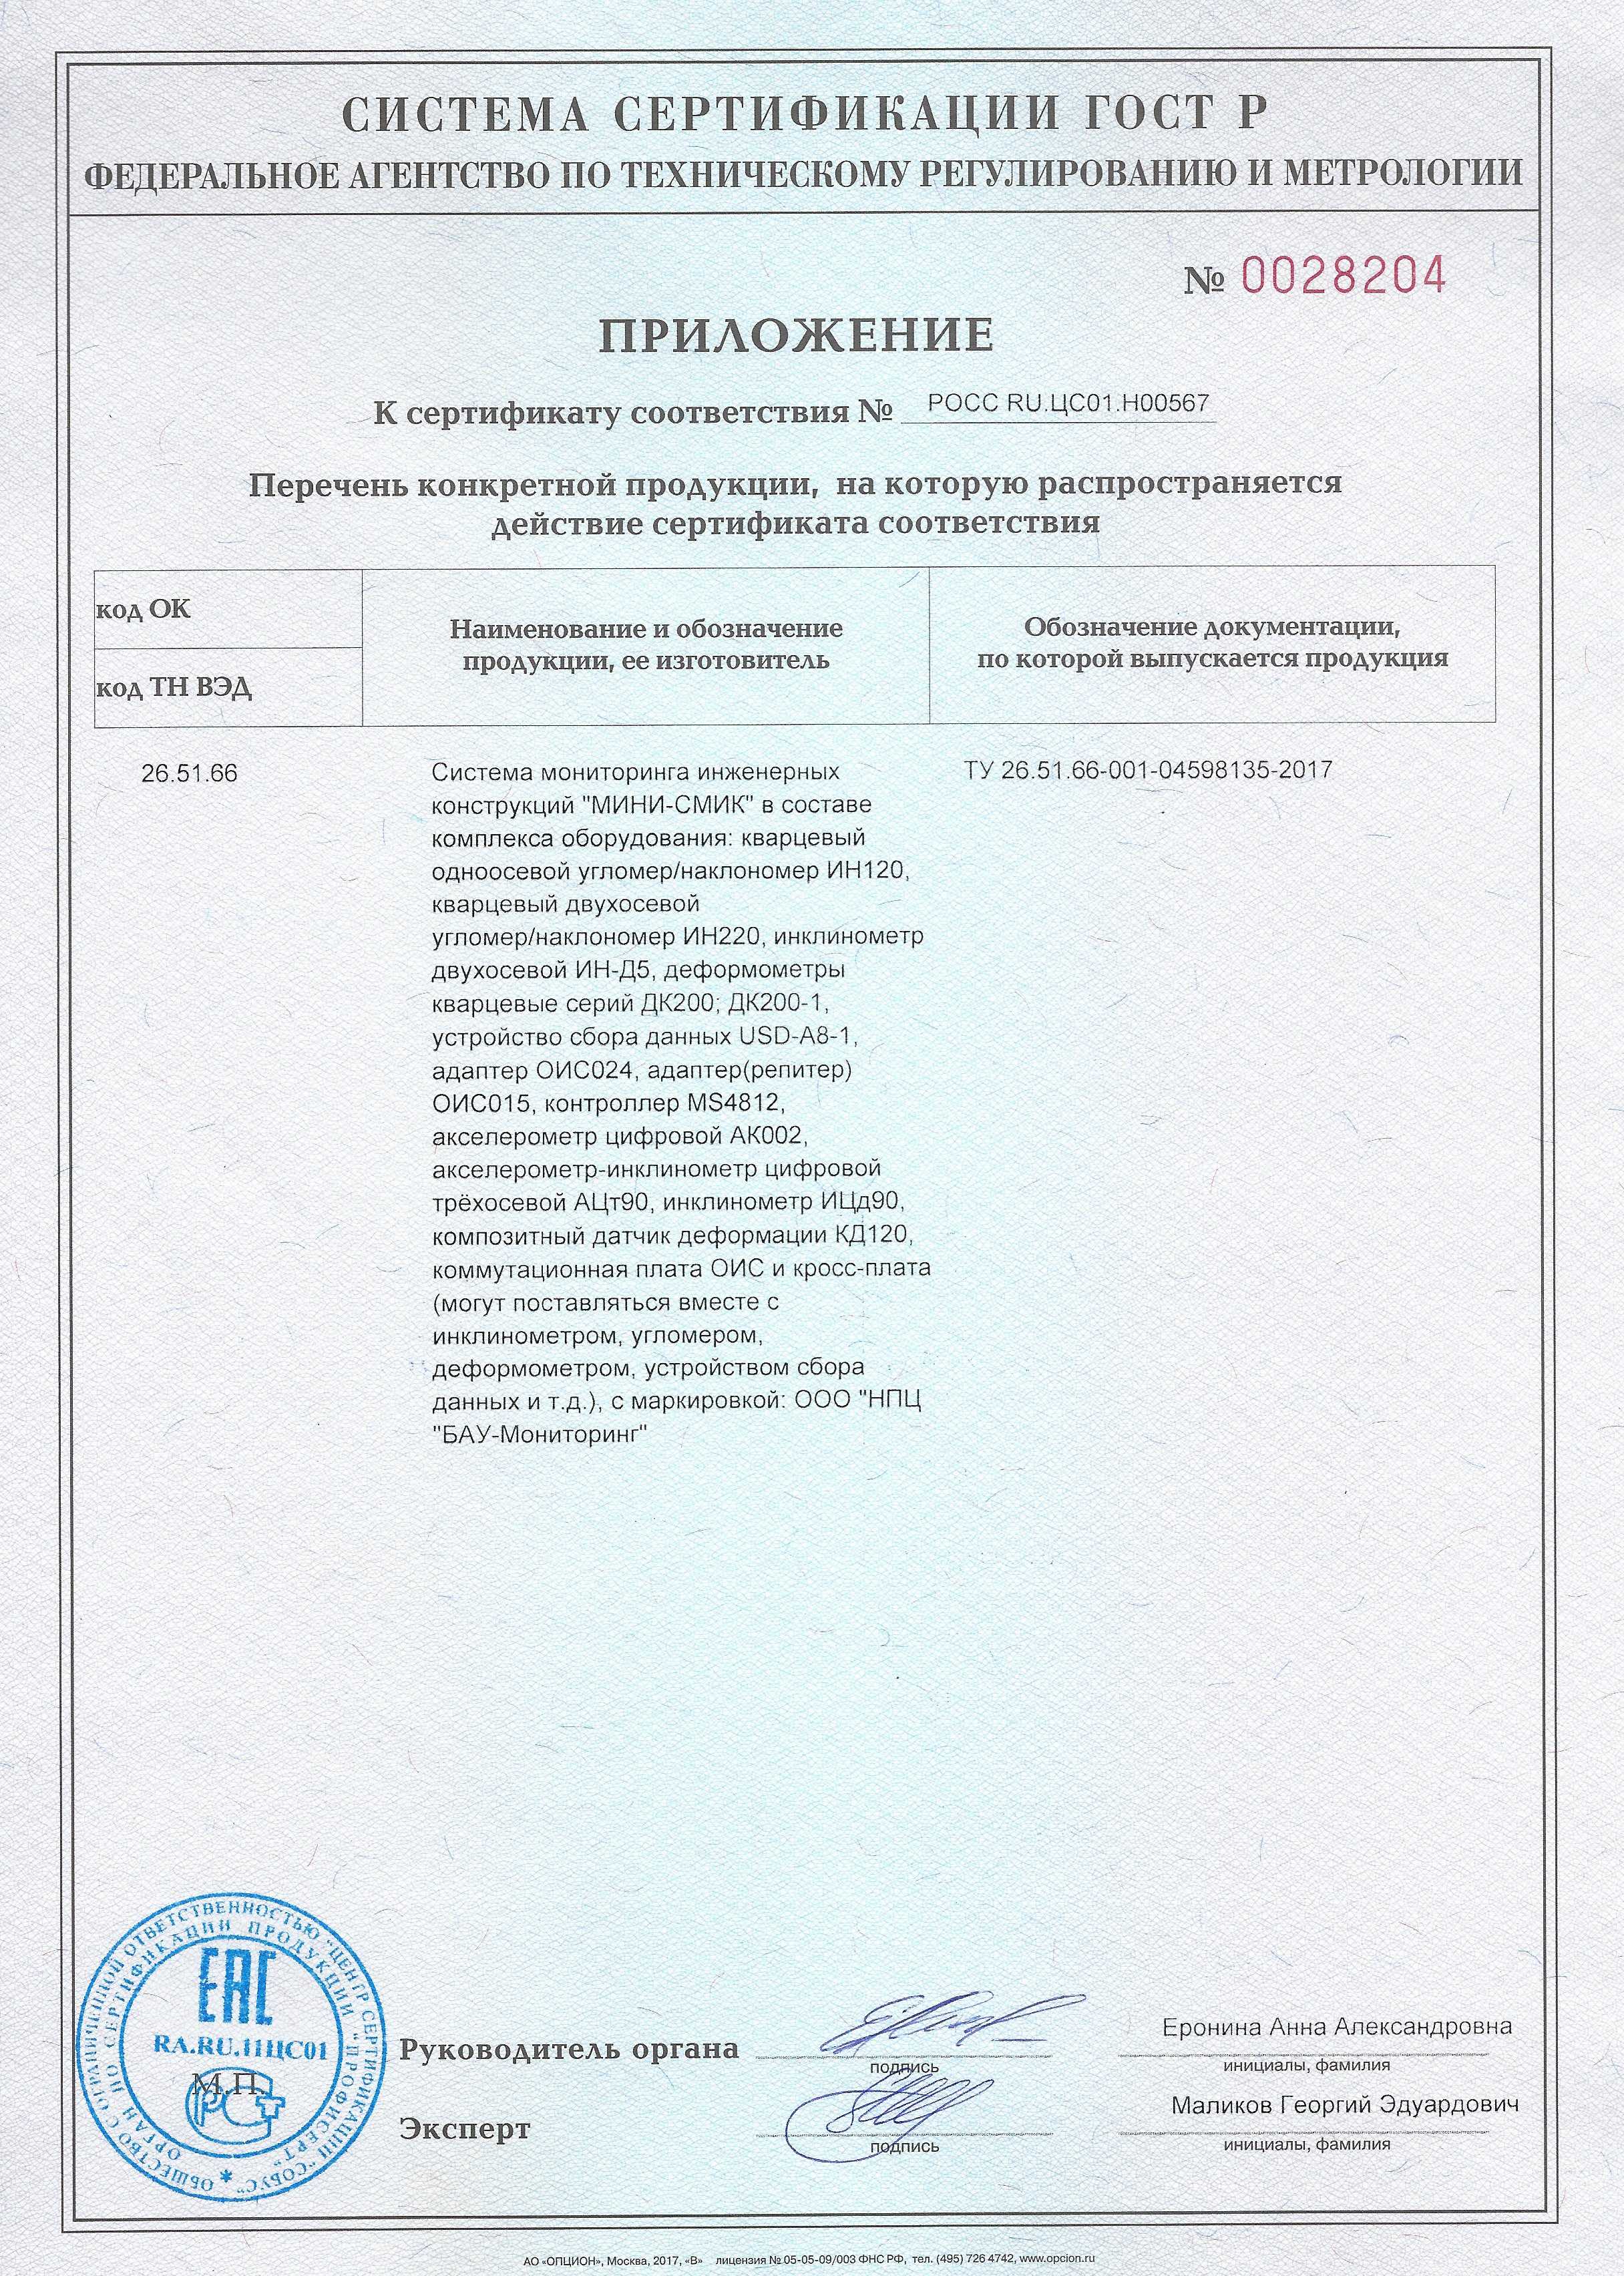 Приложение к сертификату соответствия ГОСТ Р на системы мониторинга инженерных конструкций "МИНИ-СМИК" с перечнем оборудования.